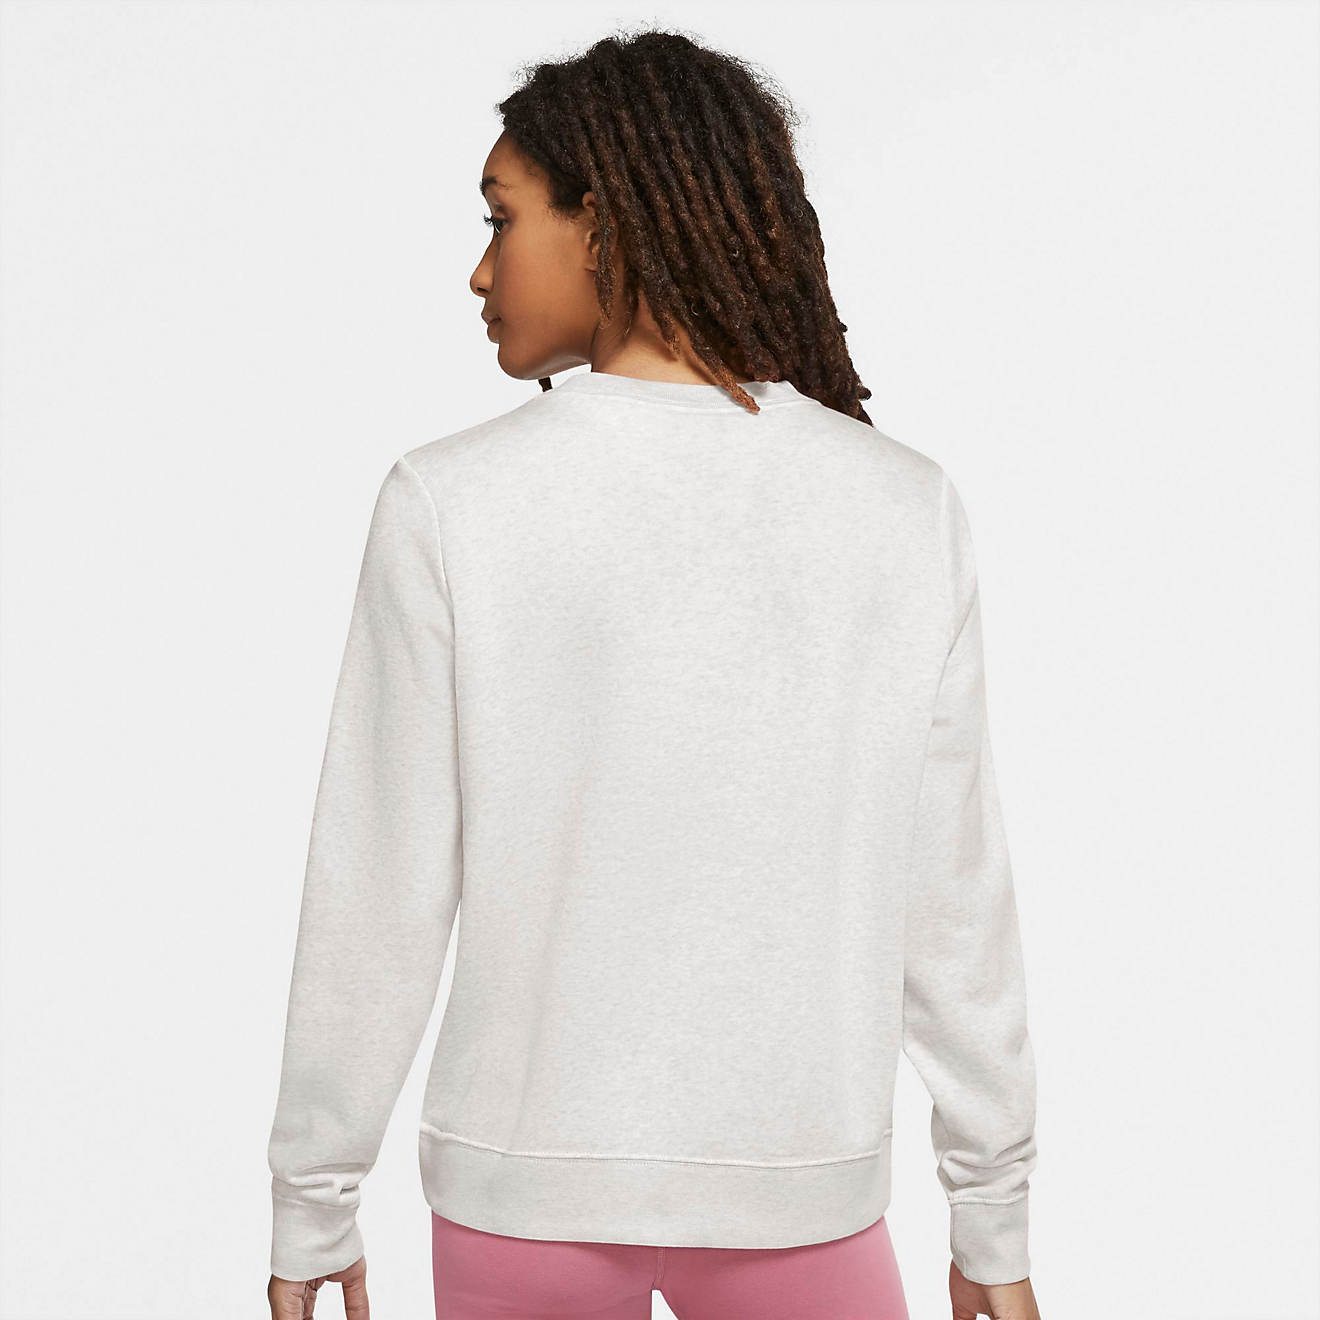 Nike Women's Sportswear Crew Club Fleece Pullover Sweatshirt | Academy